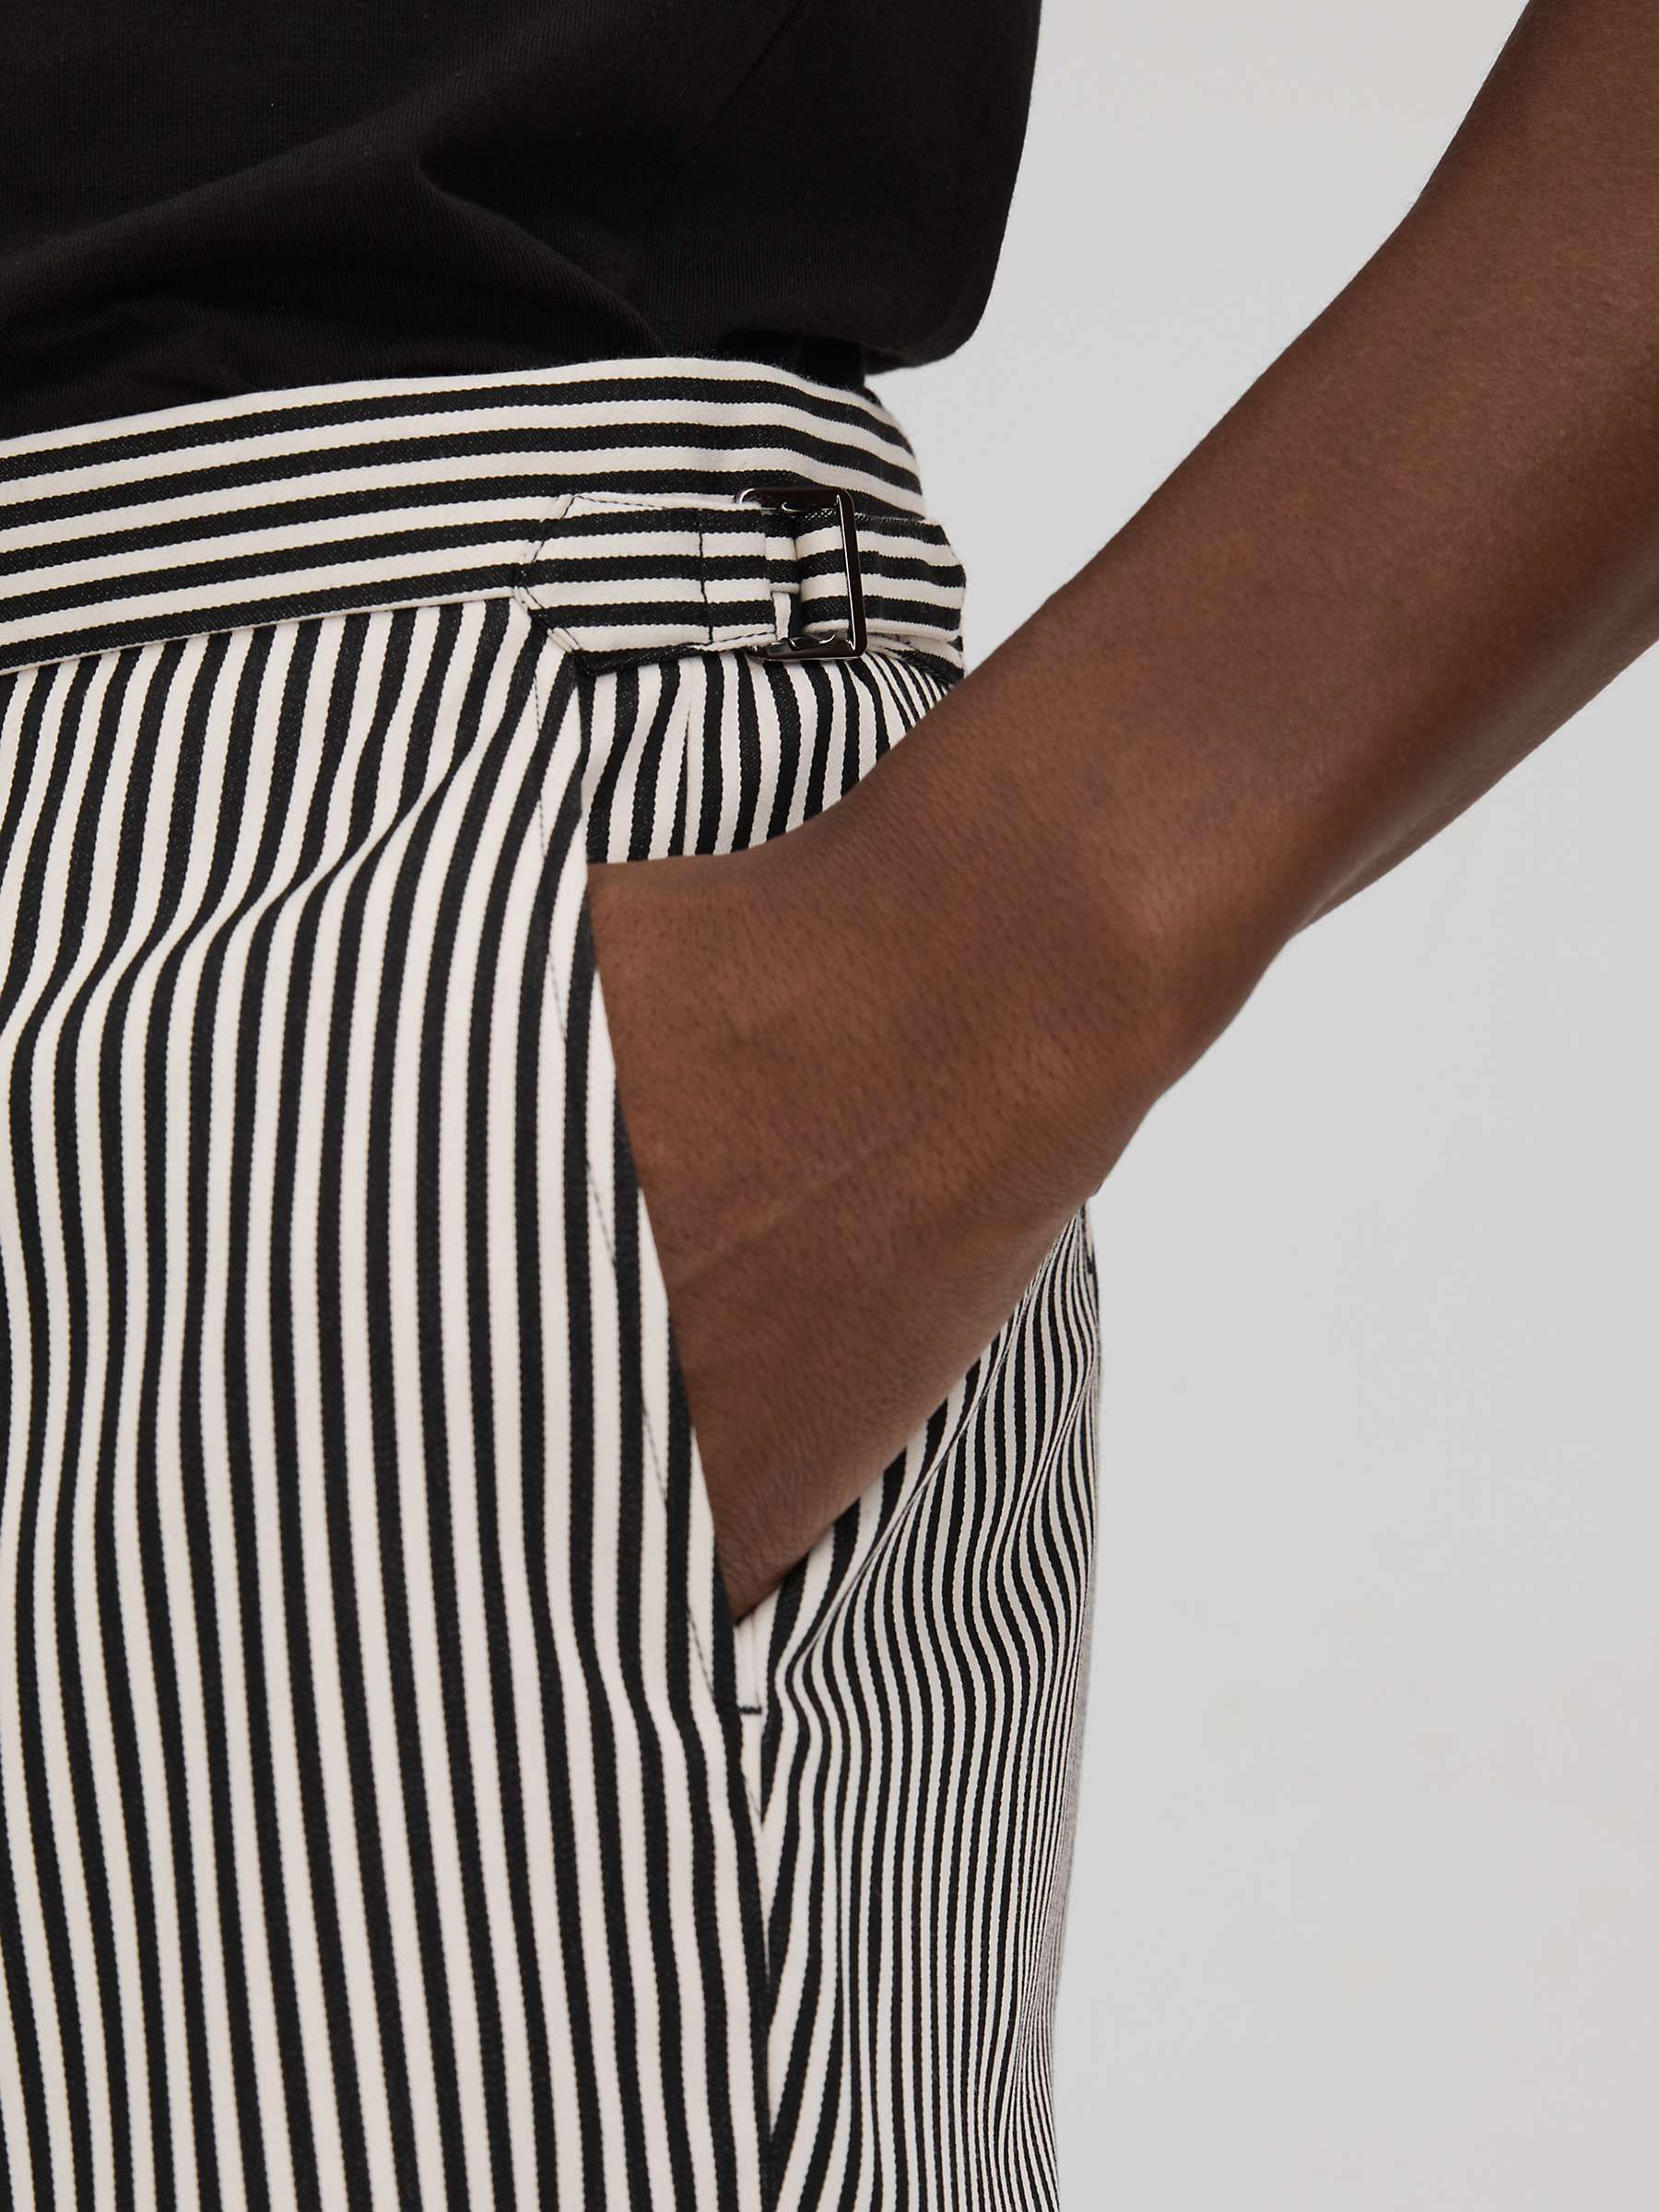 Buy Reiss Stream Stripe Shorts, Black/White Online at johnlewis.com